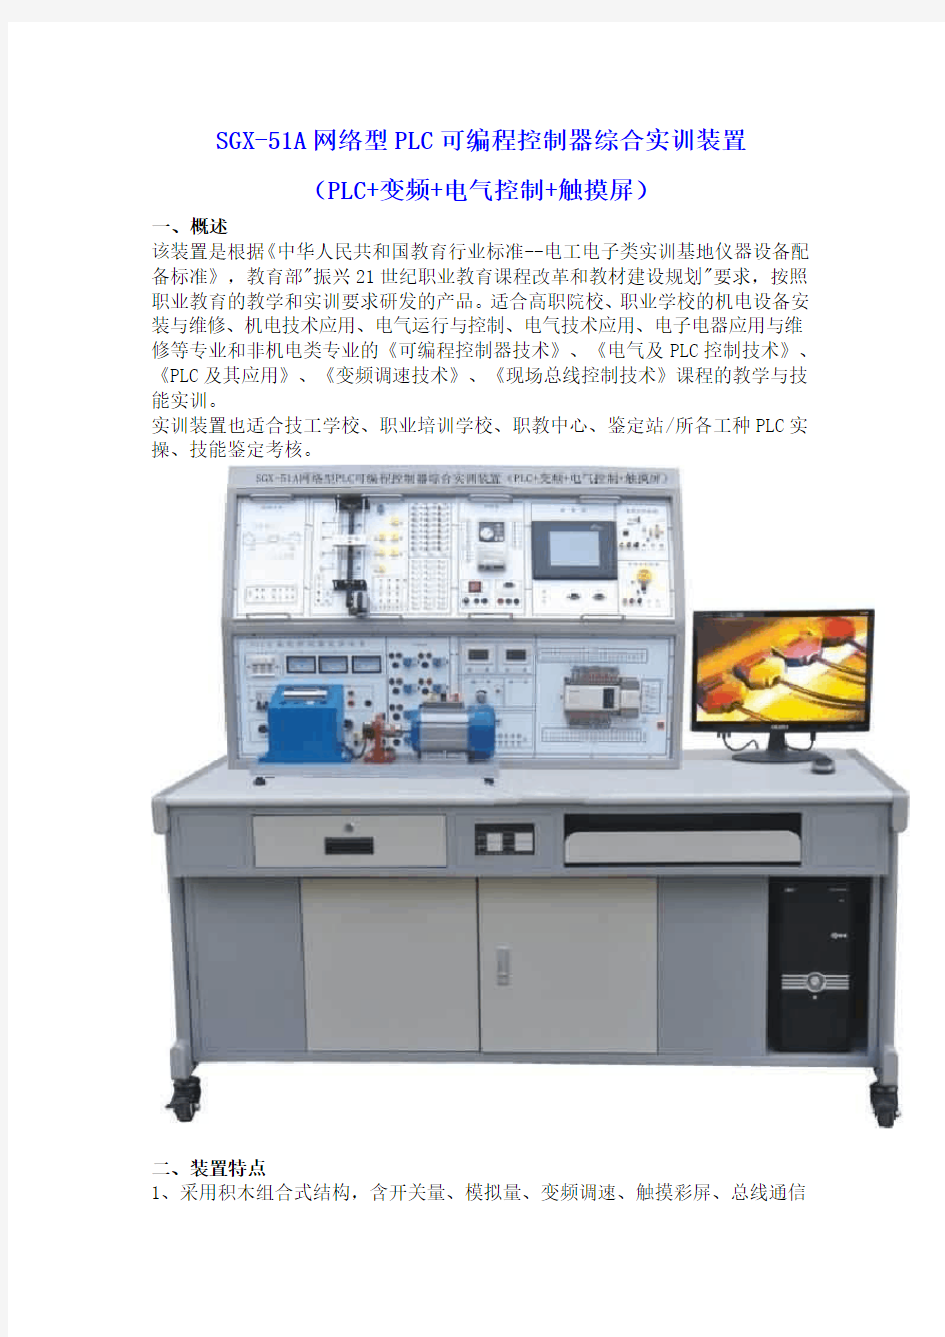 SGX-51A网络型PLC可编程控制器综合实训装置(PLC+变频+电气控制+触摸屏)